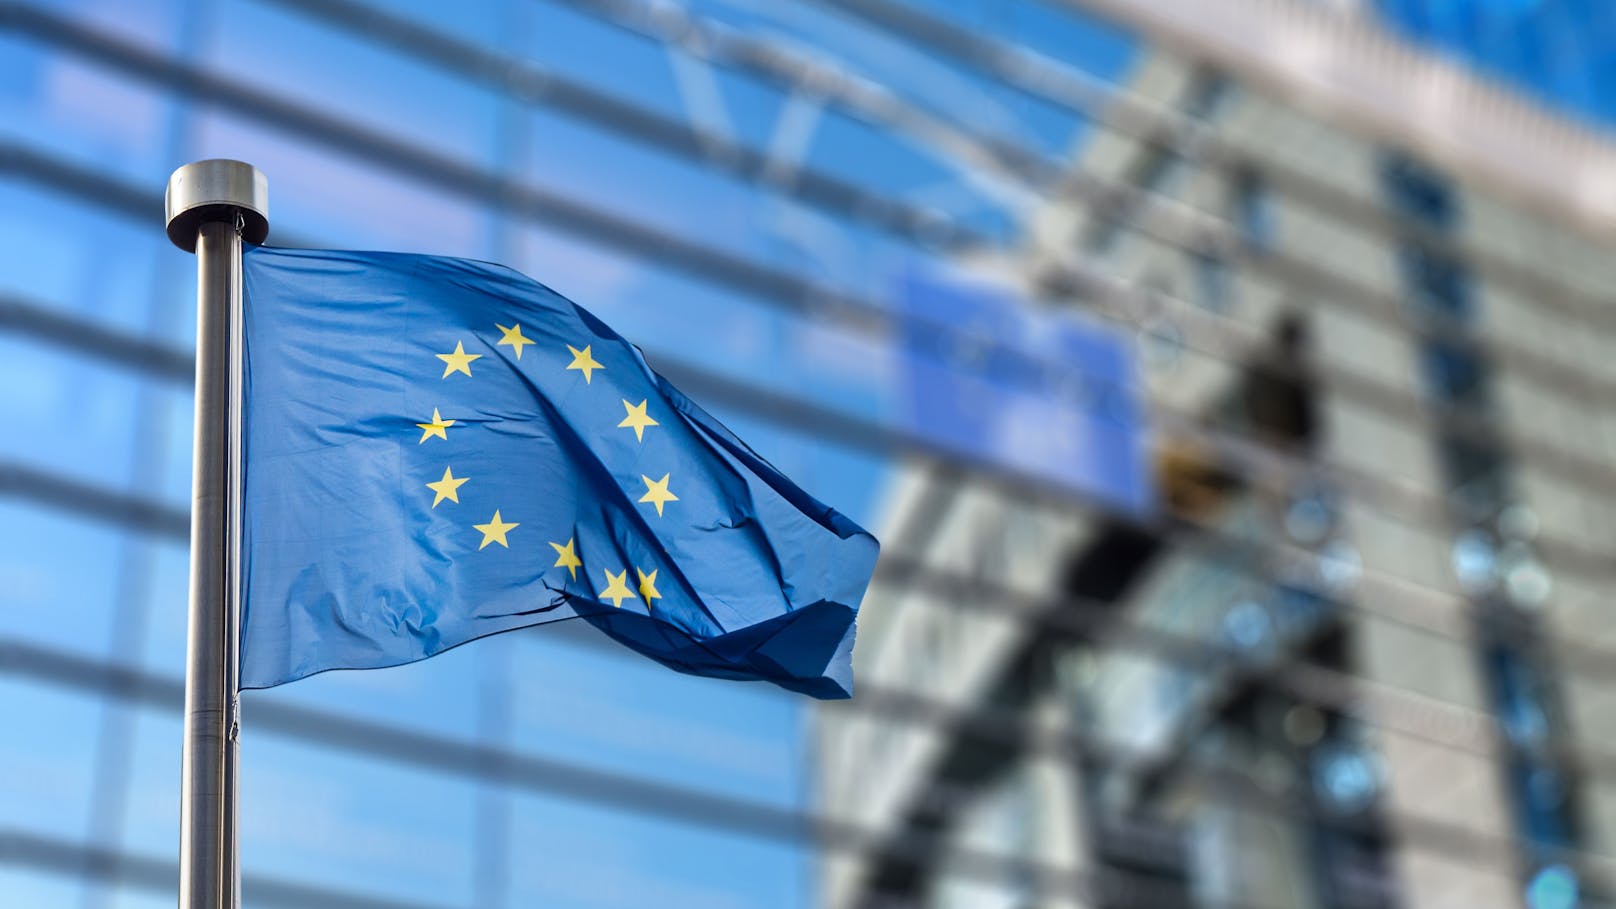 Studie klärt auf - EU spielt in Krisen negative Rolle